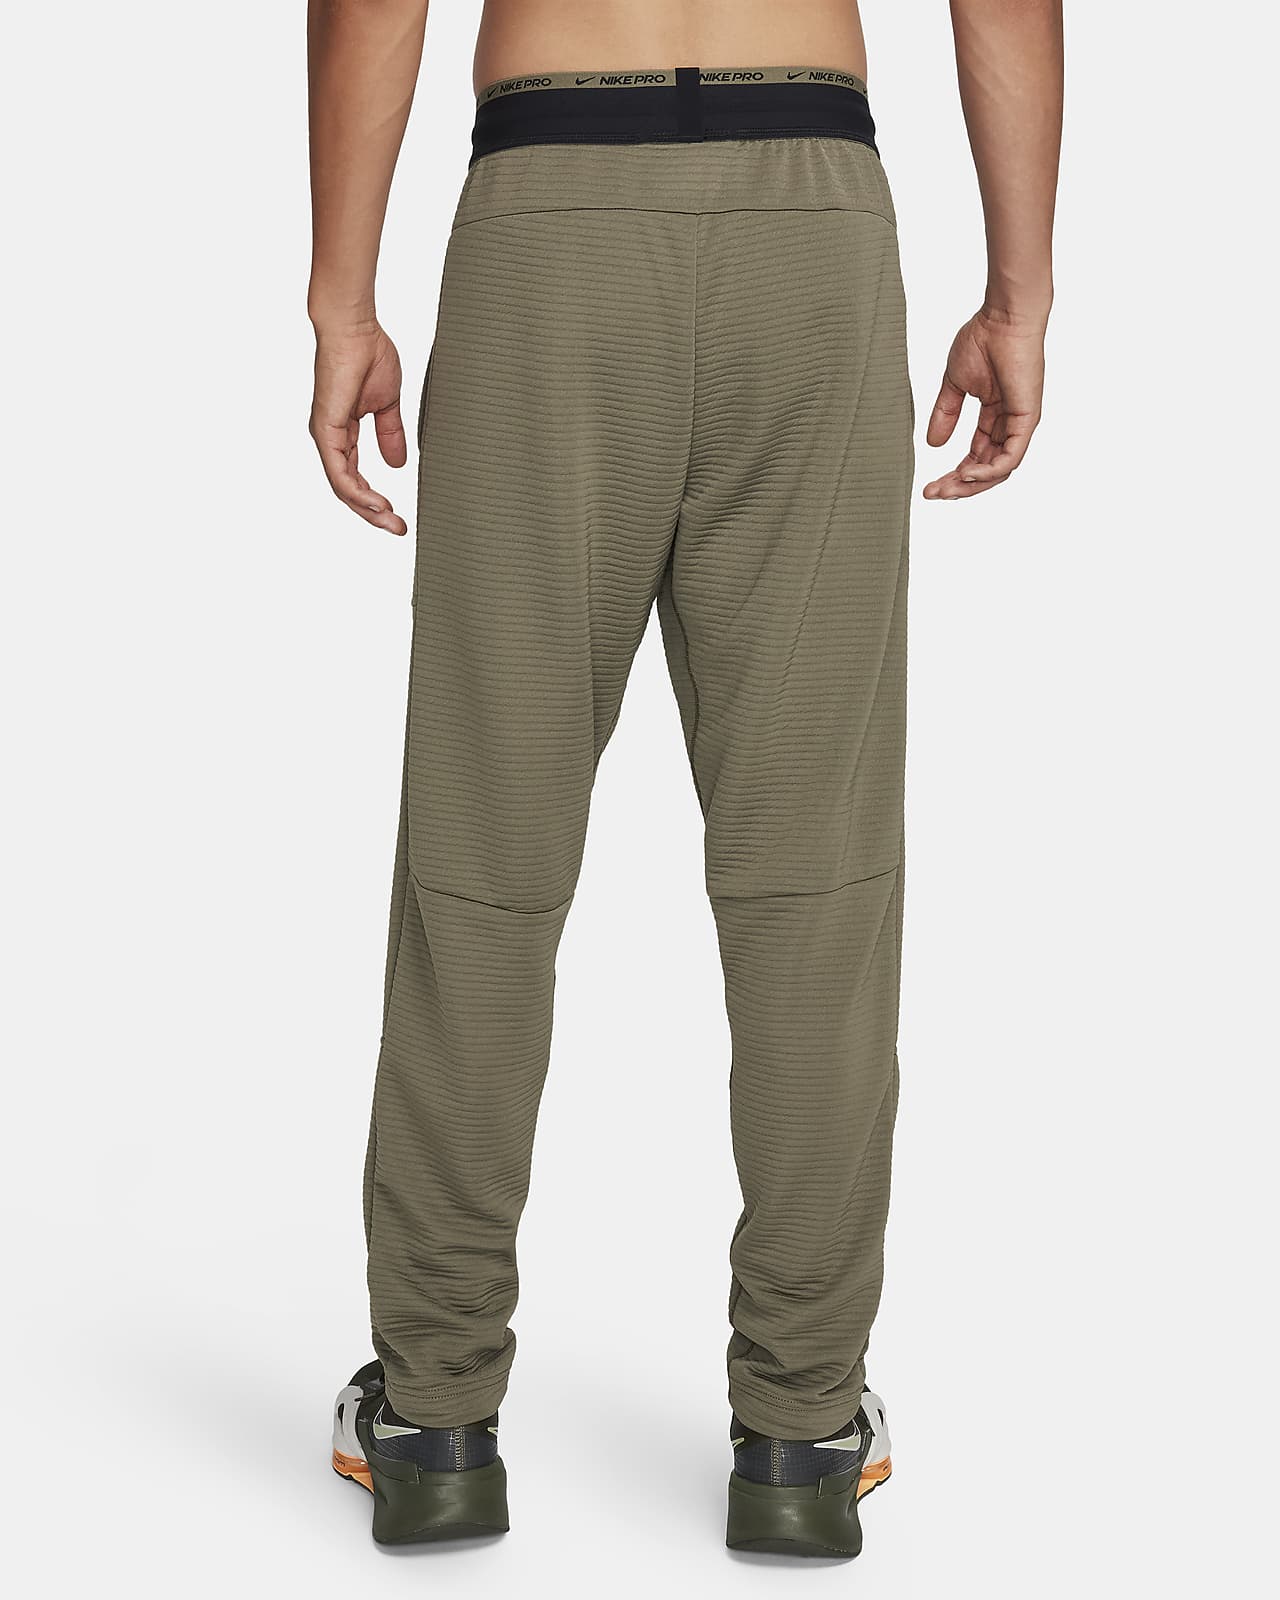 Nike Men's Dri-FIT Fleece Fitness Pants